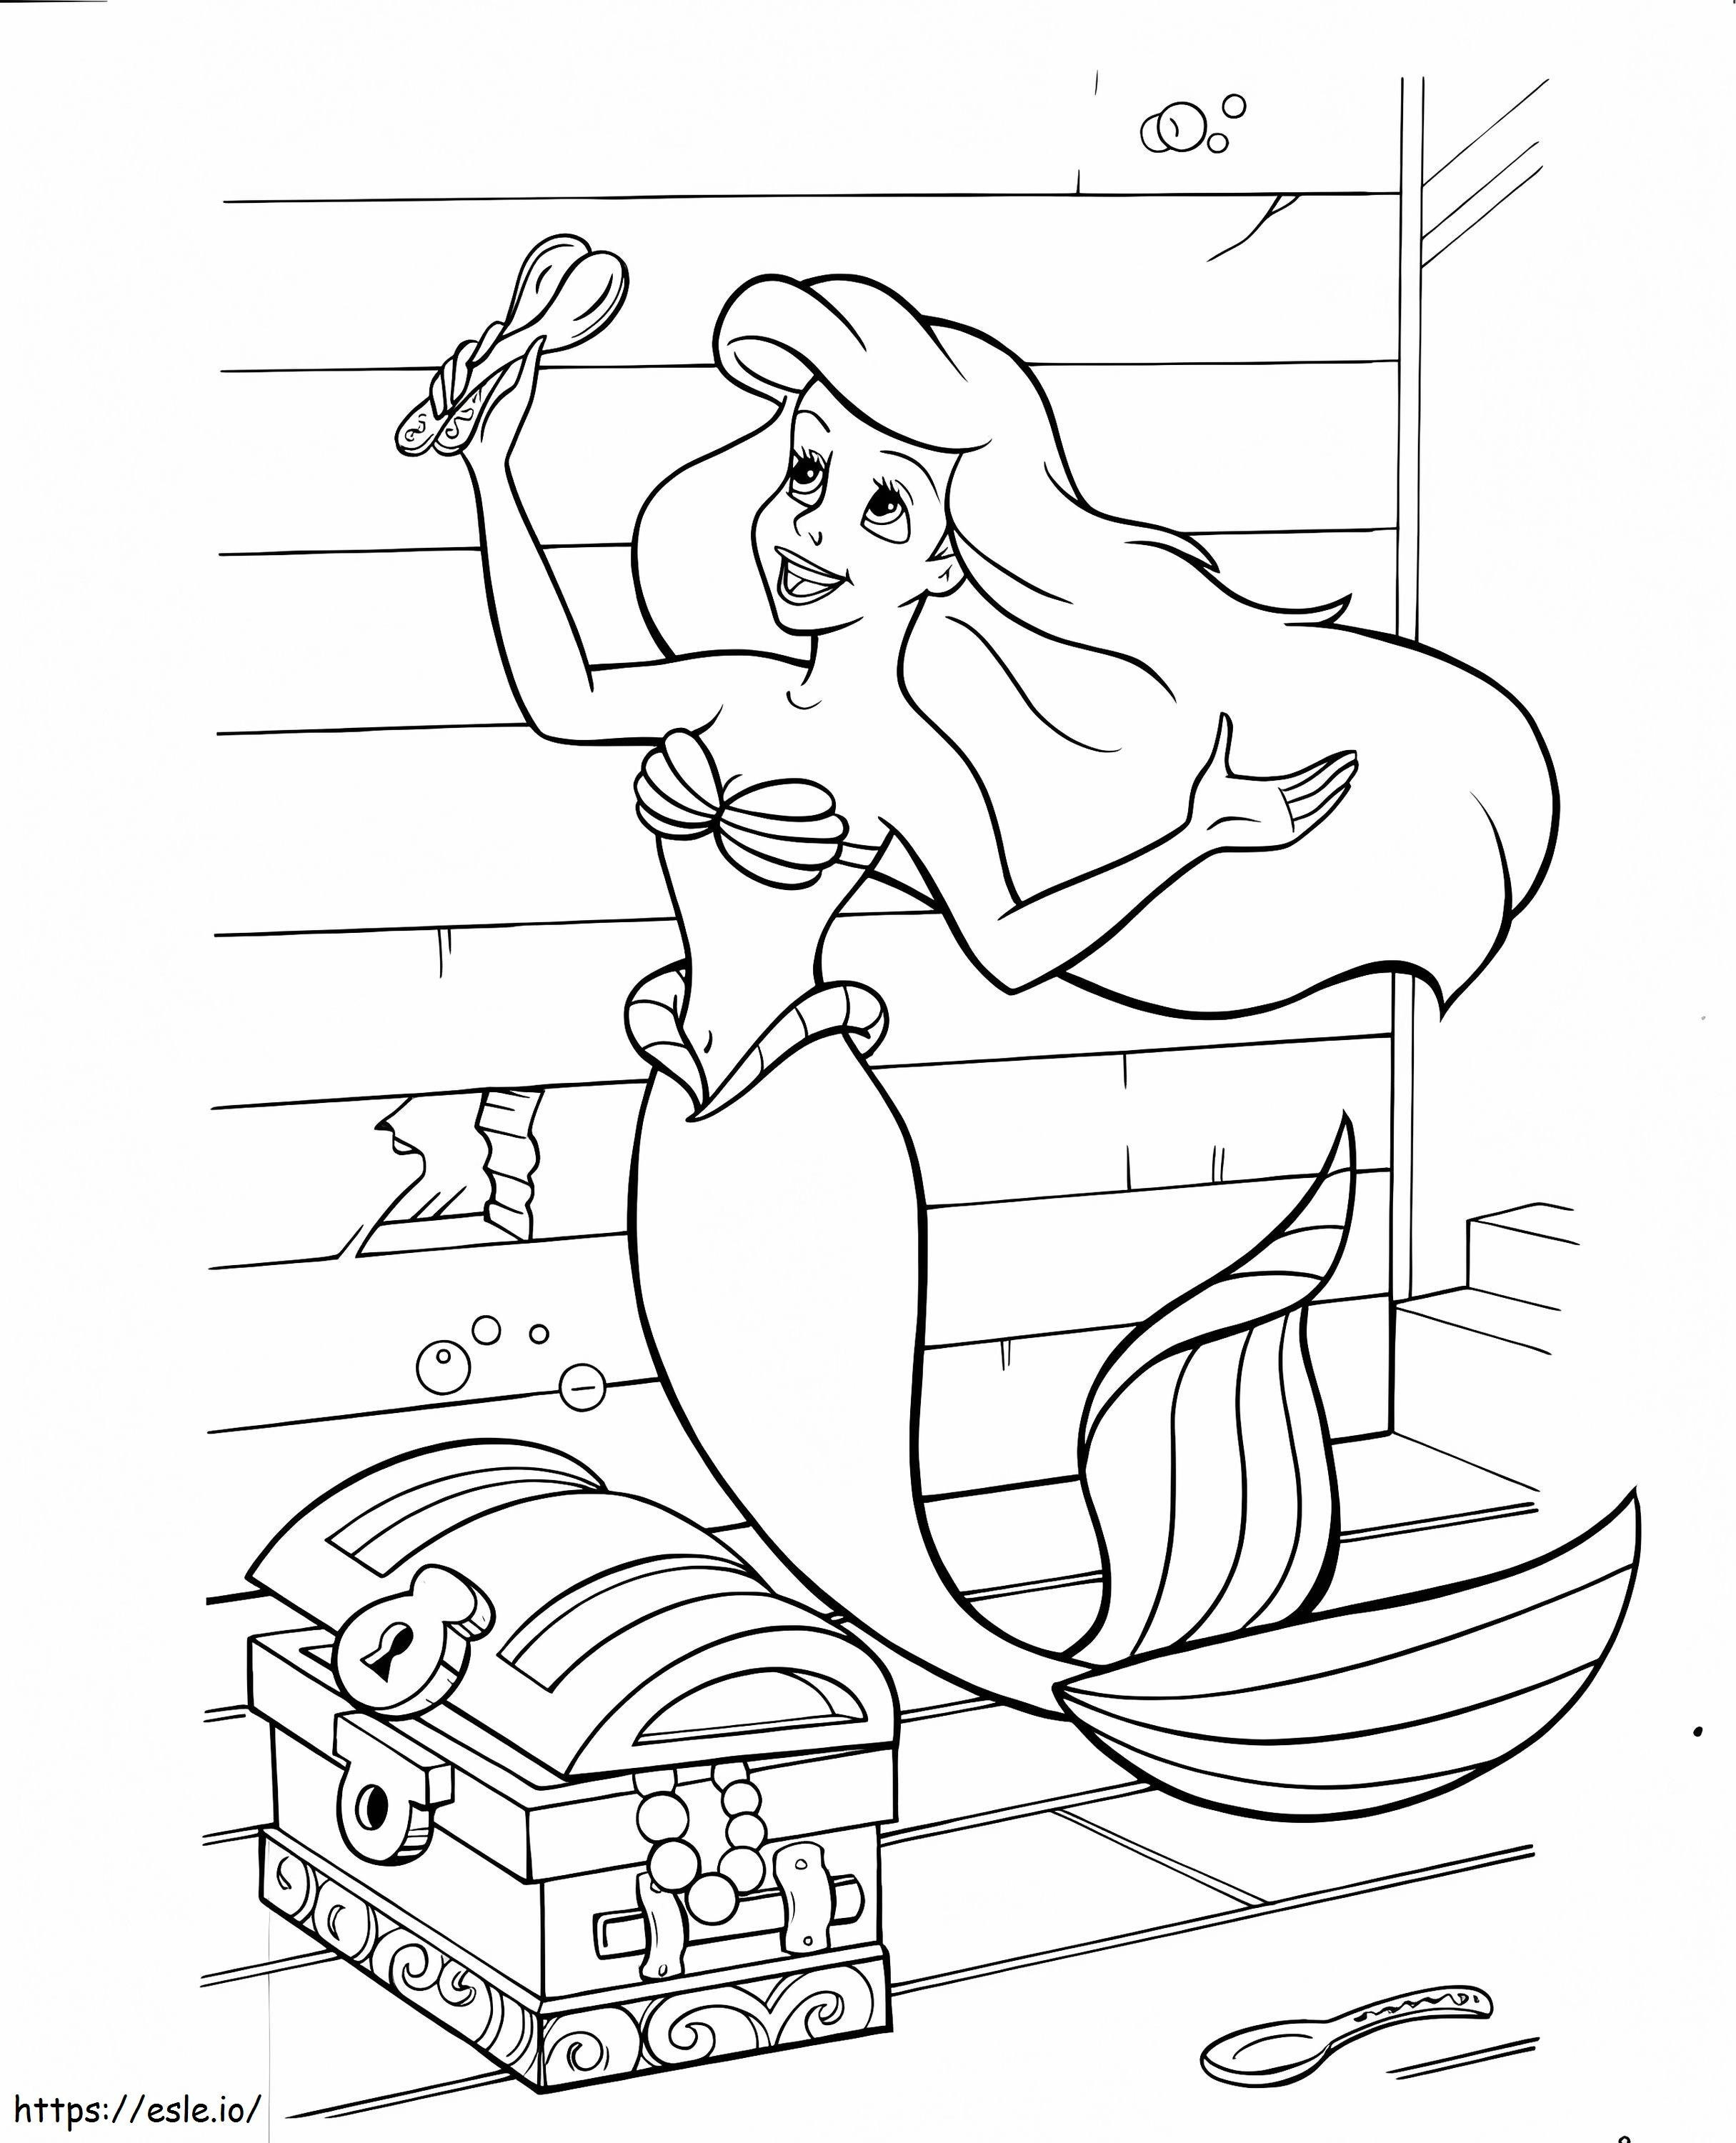 Ariel i skarb kolorowanka